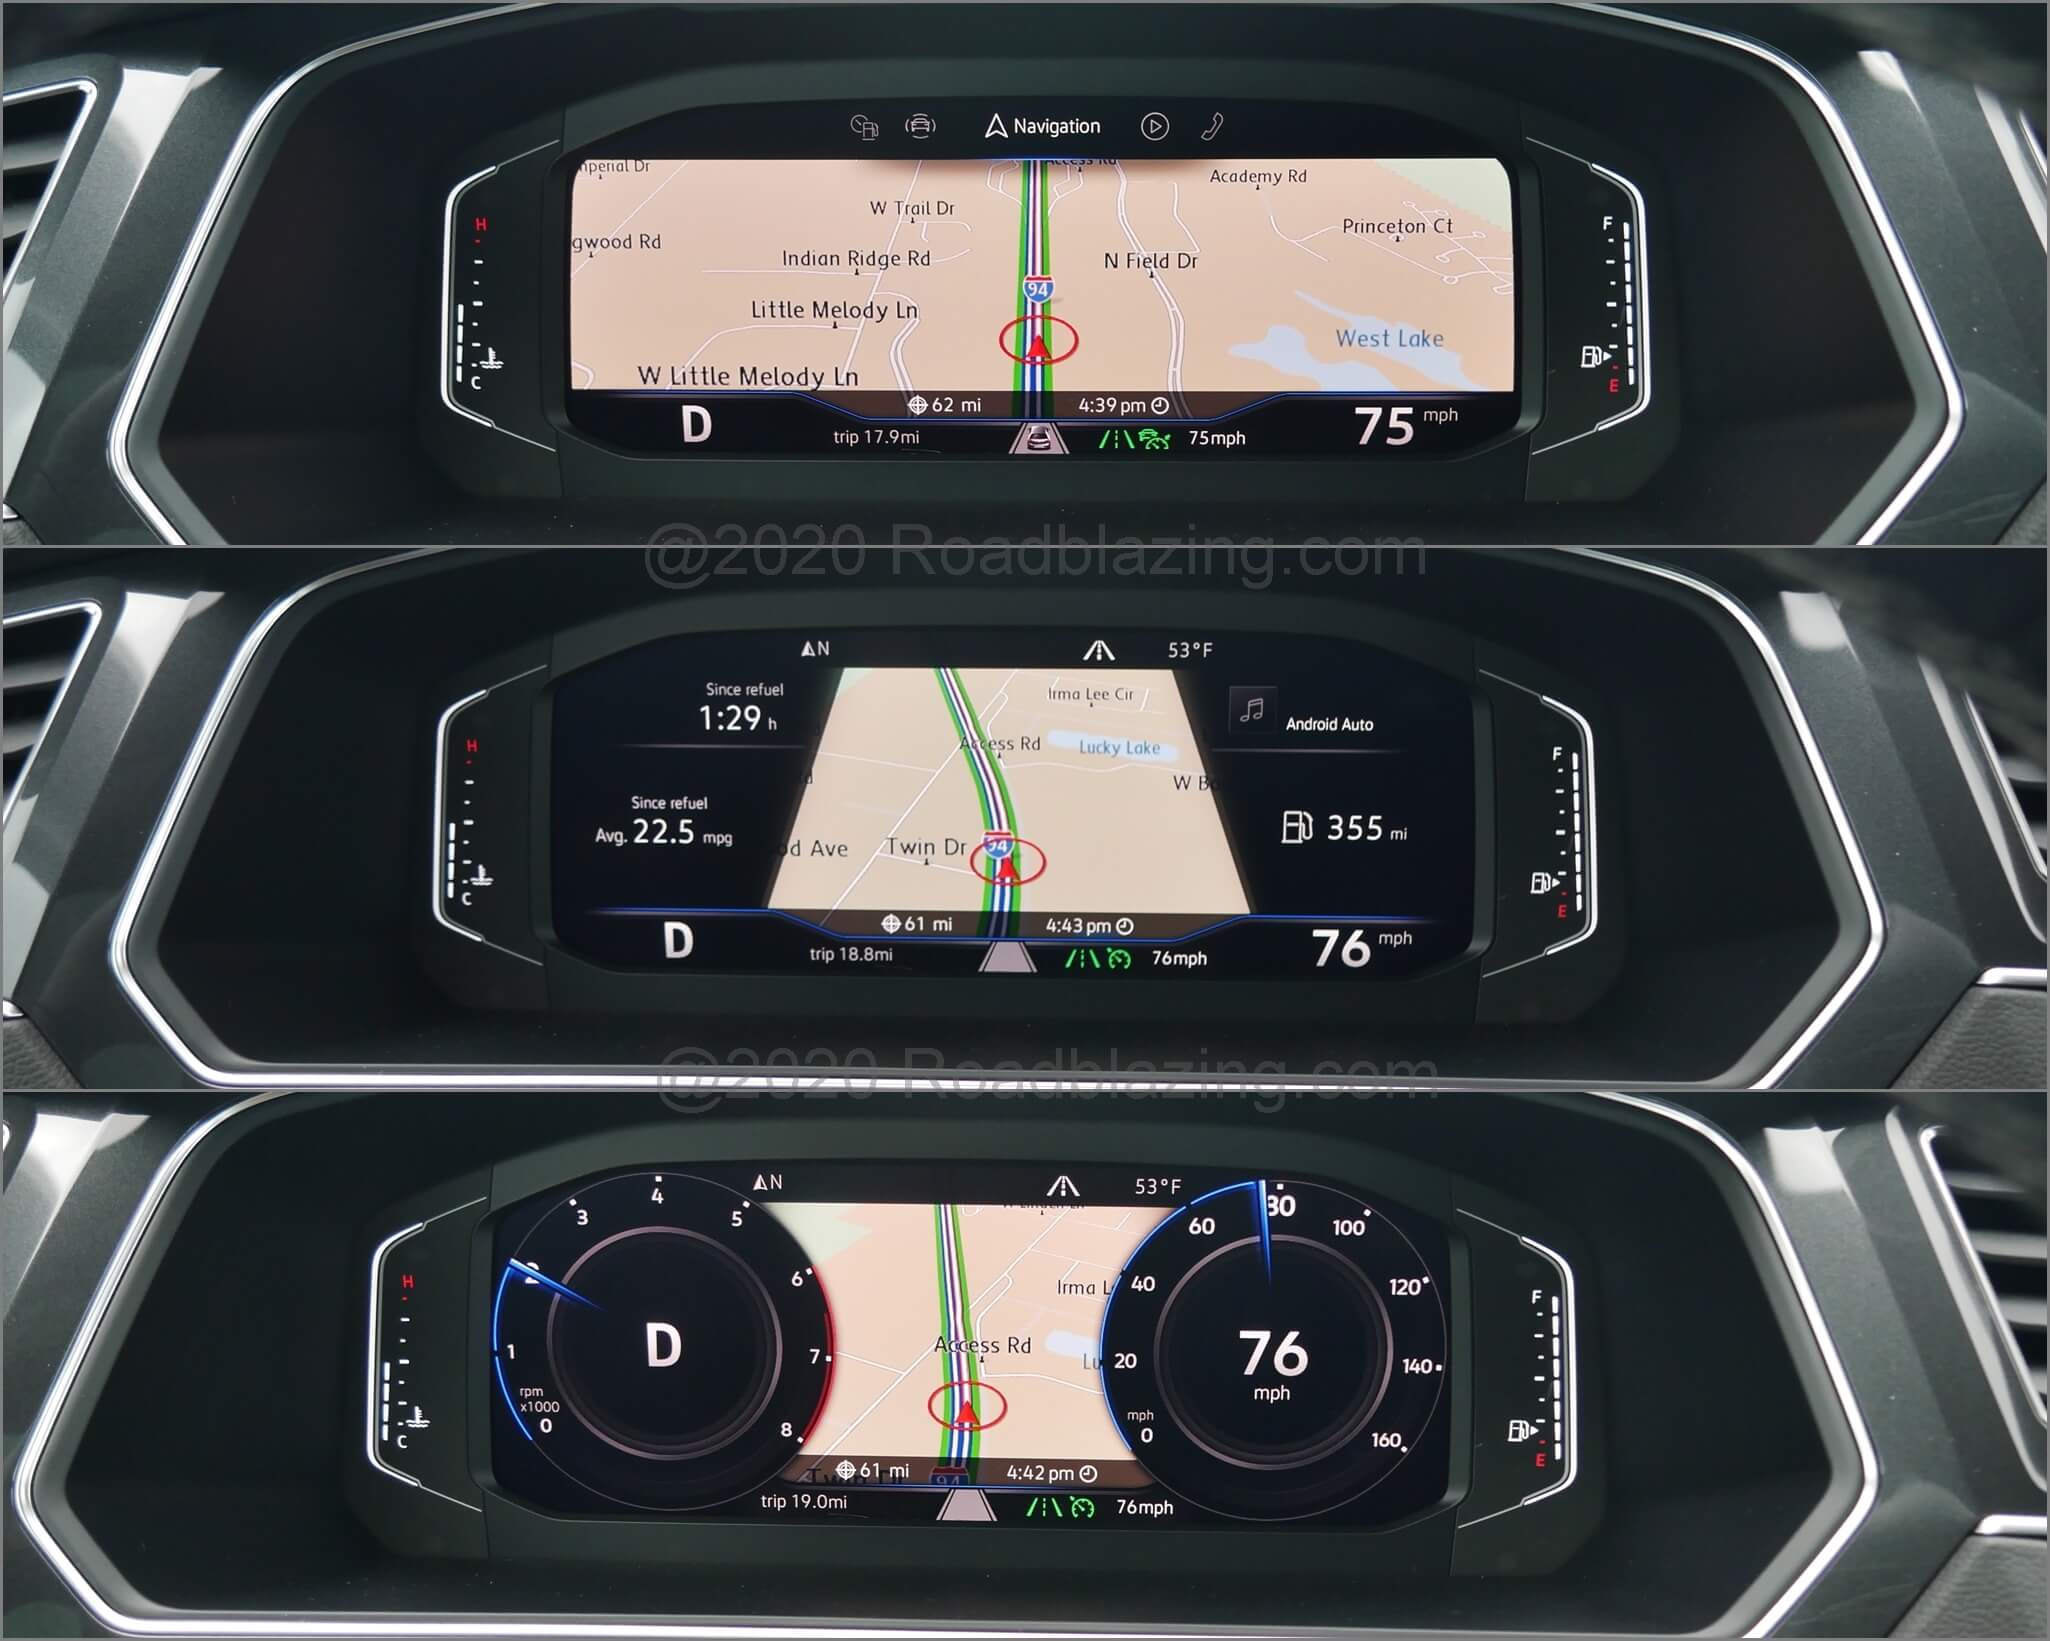 2019 Volkswagen Tiguan SEL Premium R-Line 4Motion: 10.25" TFT Digital Cockpit virtual gauges with embedded navigation map